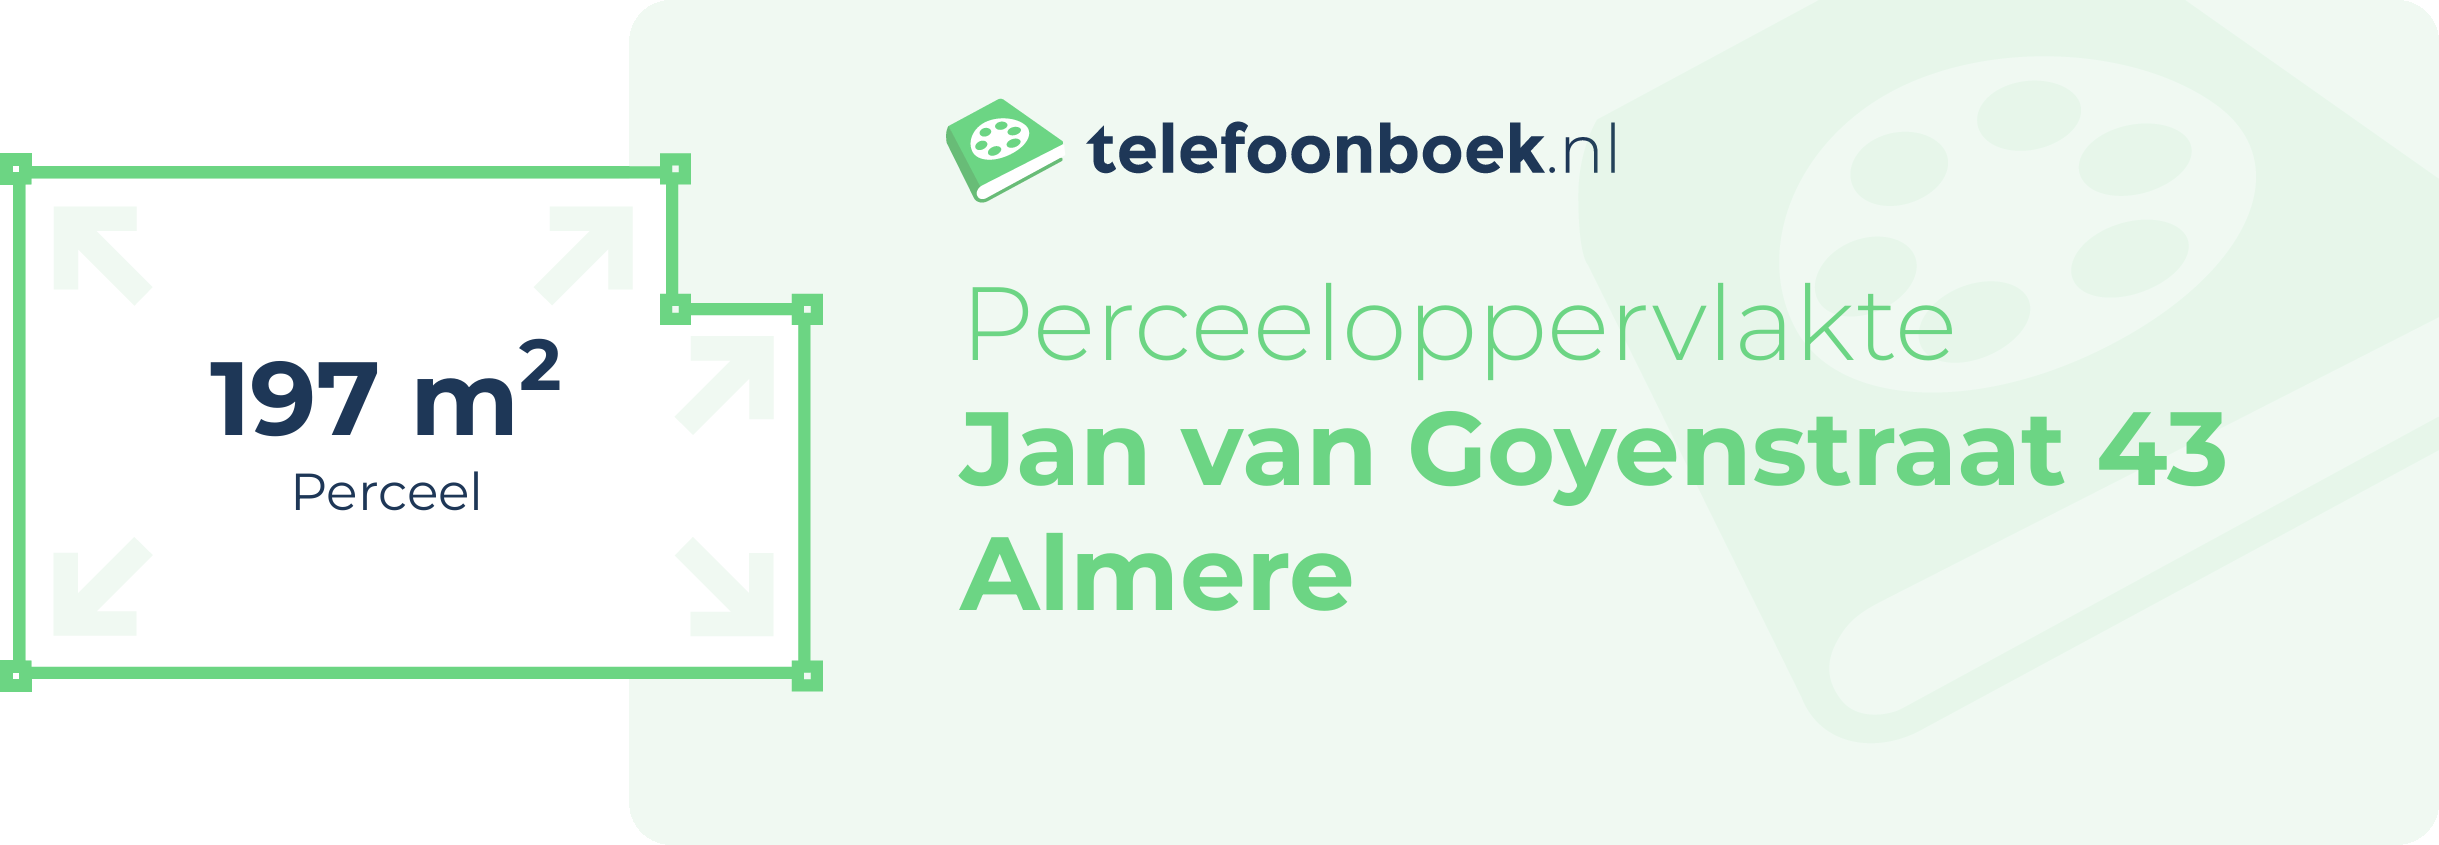 Perceeloppervlakte Jan Van Goyenstraat 43 Almere